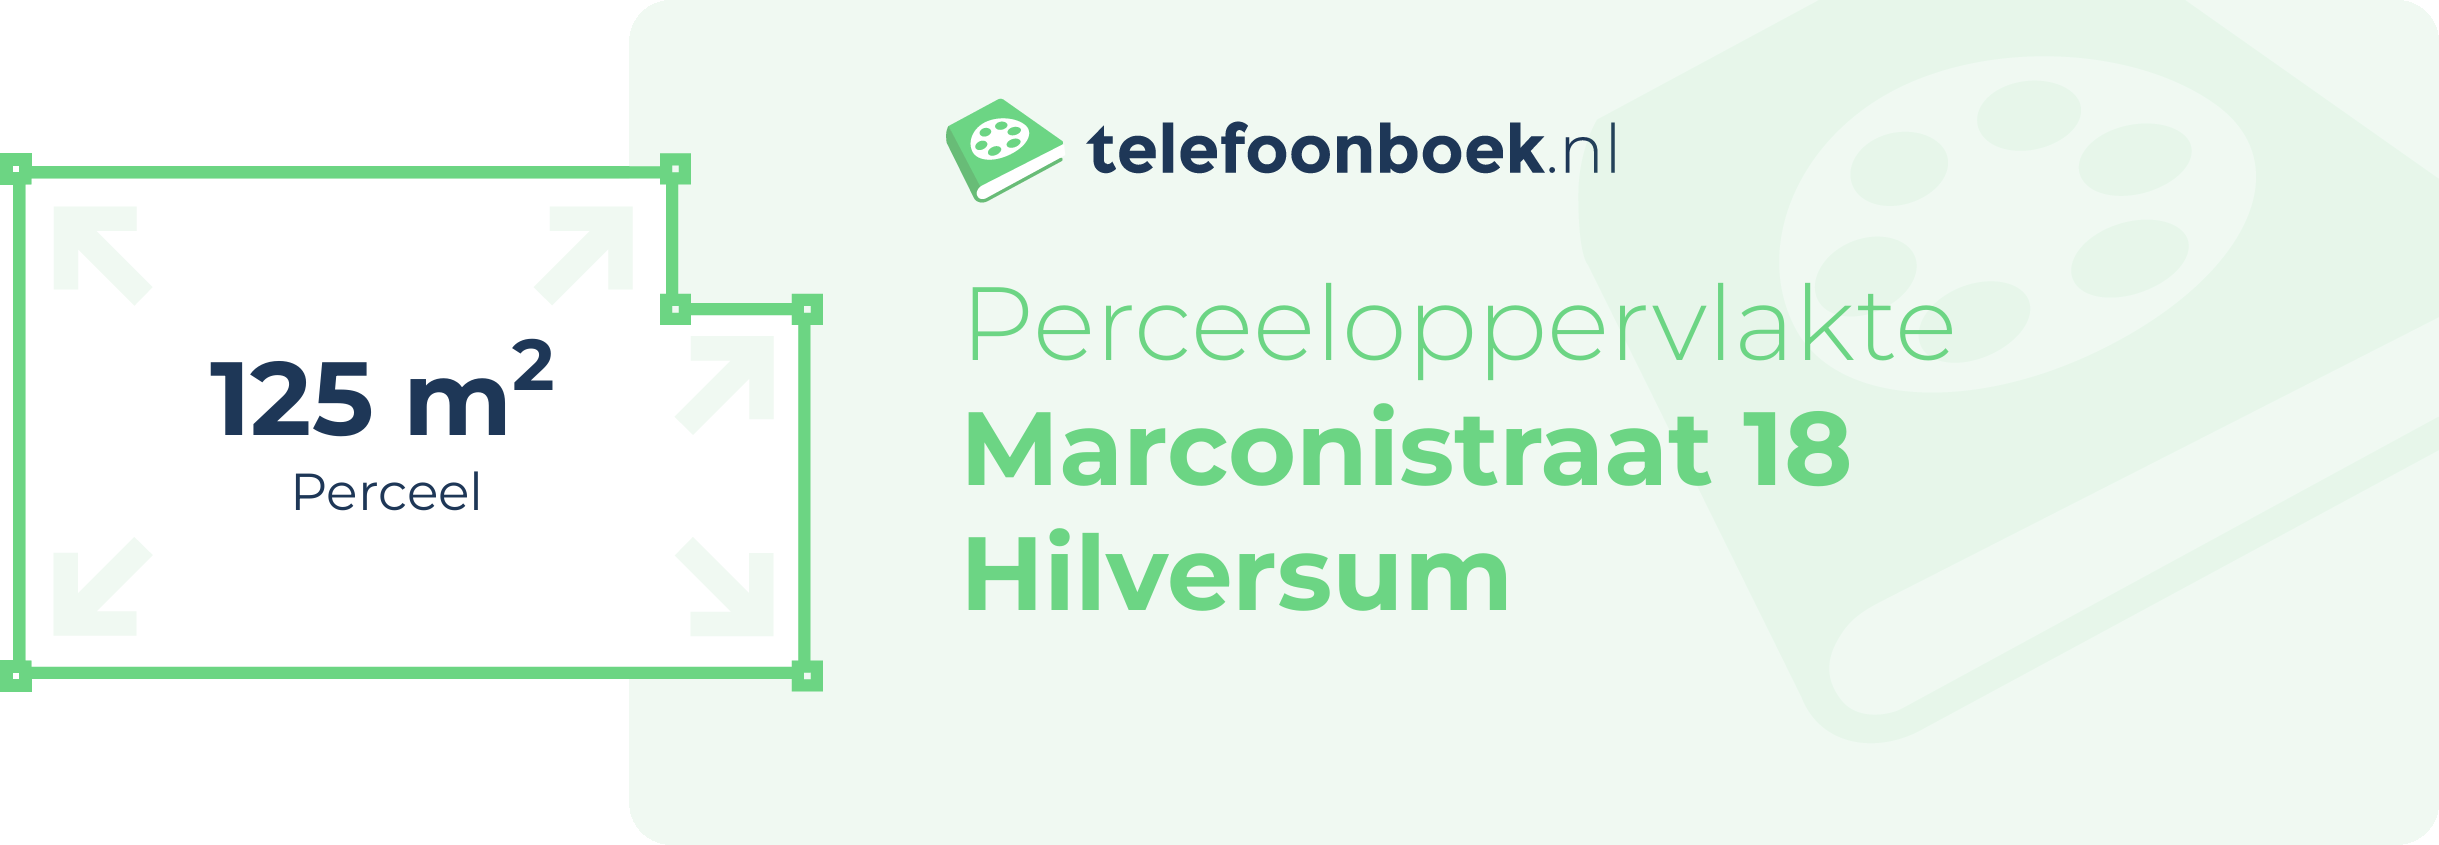 Perceeloppervlakte Marconistraat 18 Hilversum